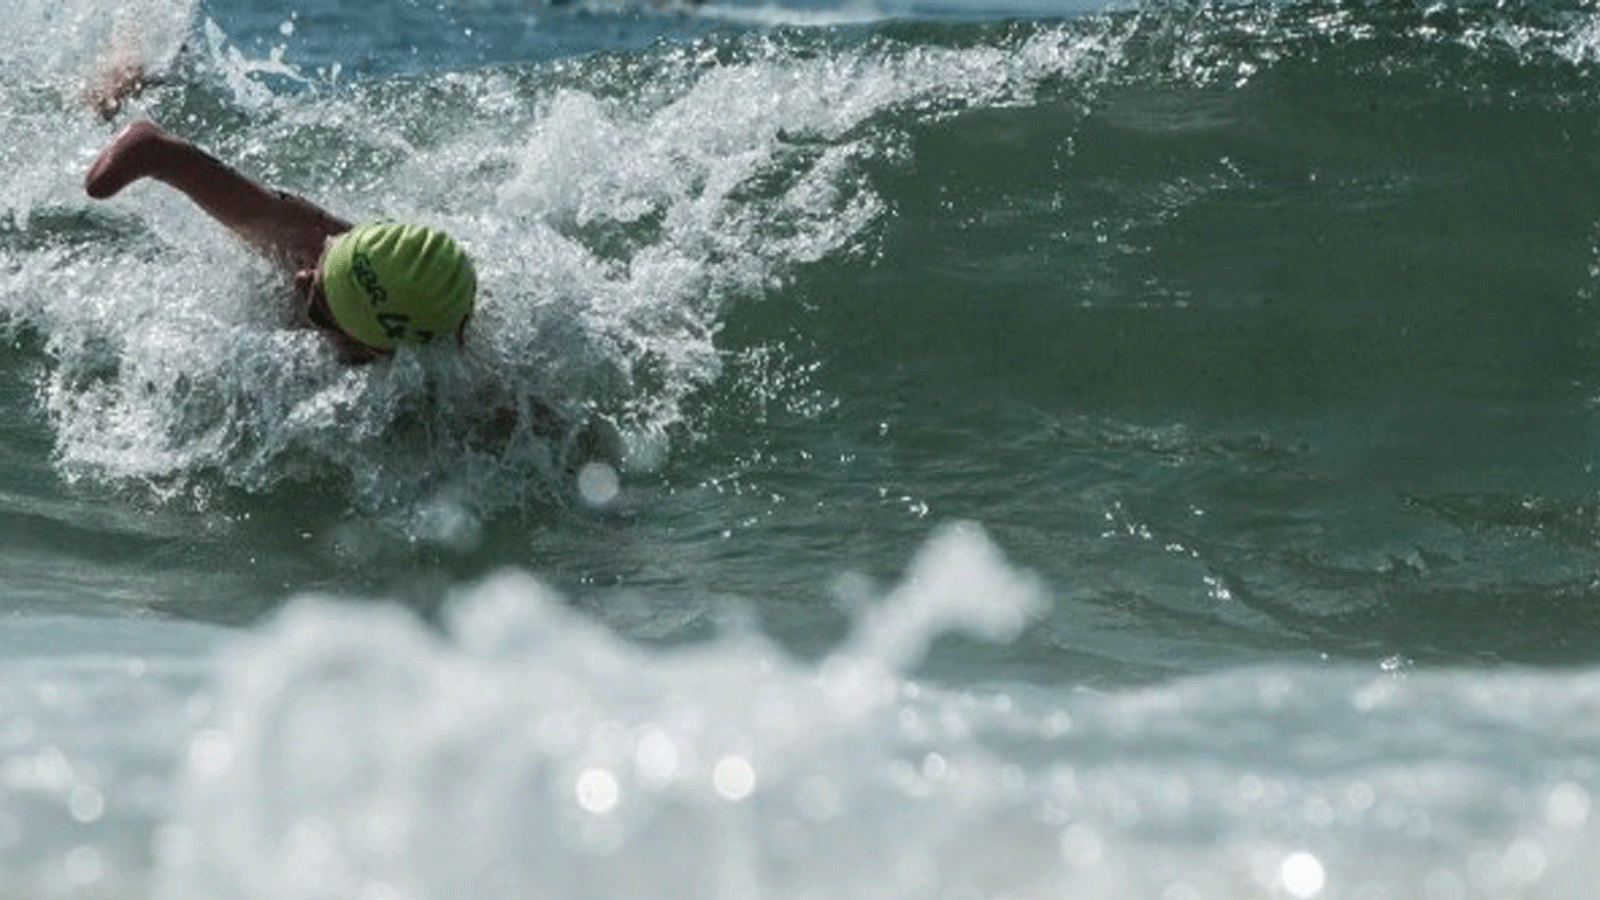 إصابة ما لا يقل عن 57 سباح بالإسهال والقيء بعد السباحة في البحر خلال مرحلة المملكة المتحدة من بطولة العالم للترياتلون